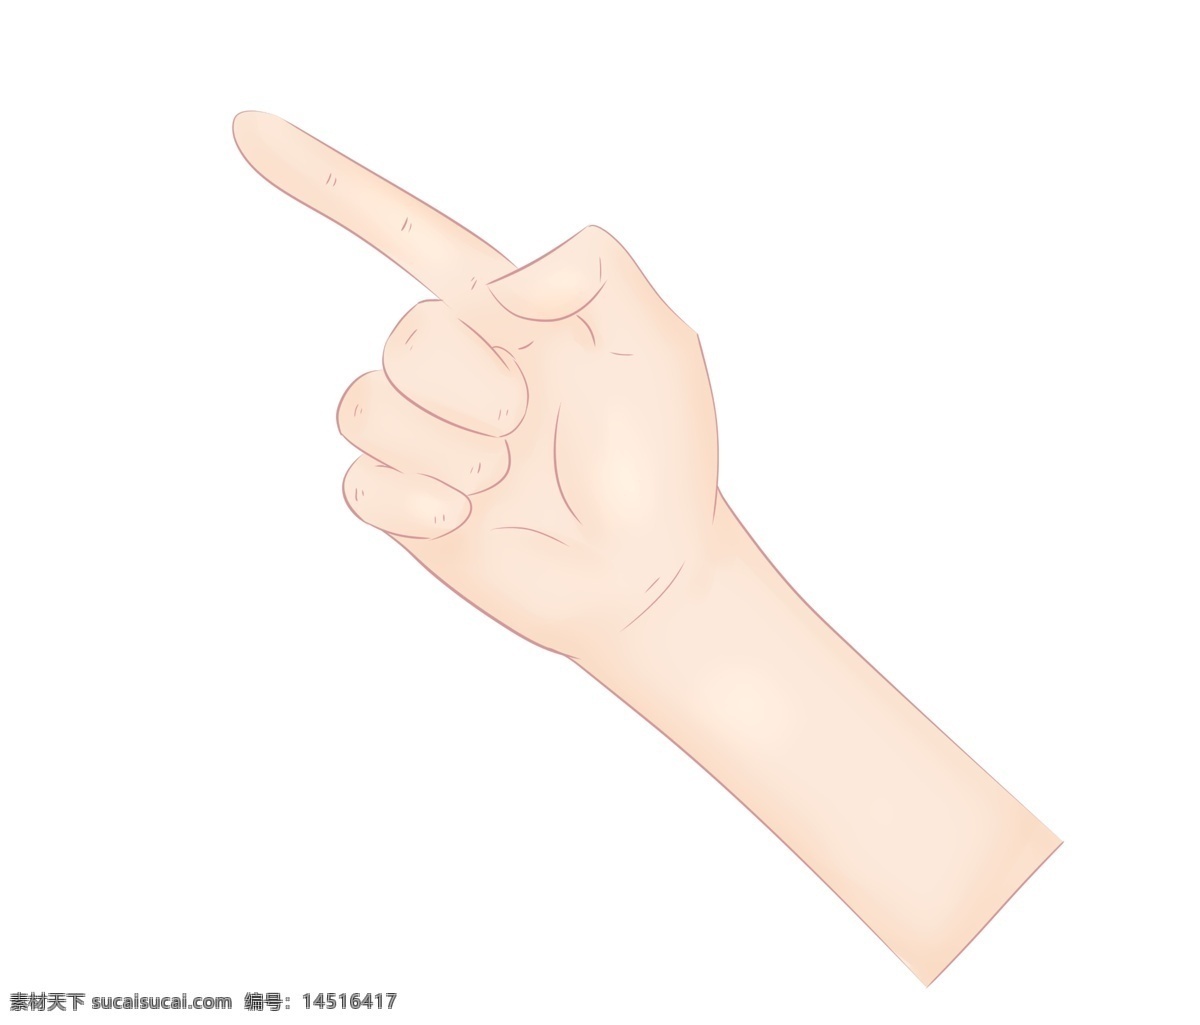 食指 手势 卡通 插画 食指的手势 卡通插画 手势的插画 肢体语言 哑语 摆姿势 手语 指向的手势